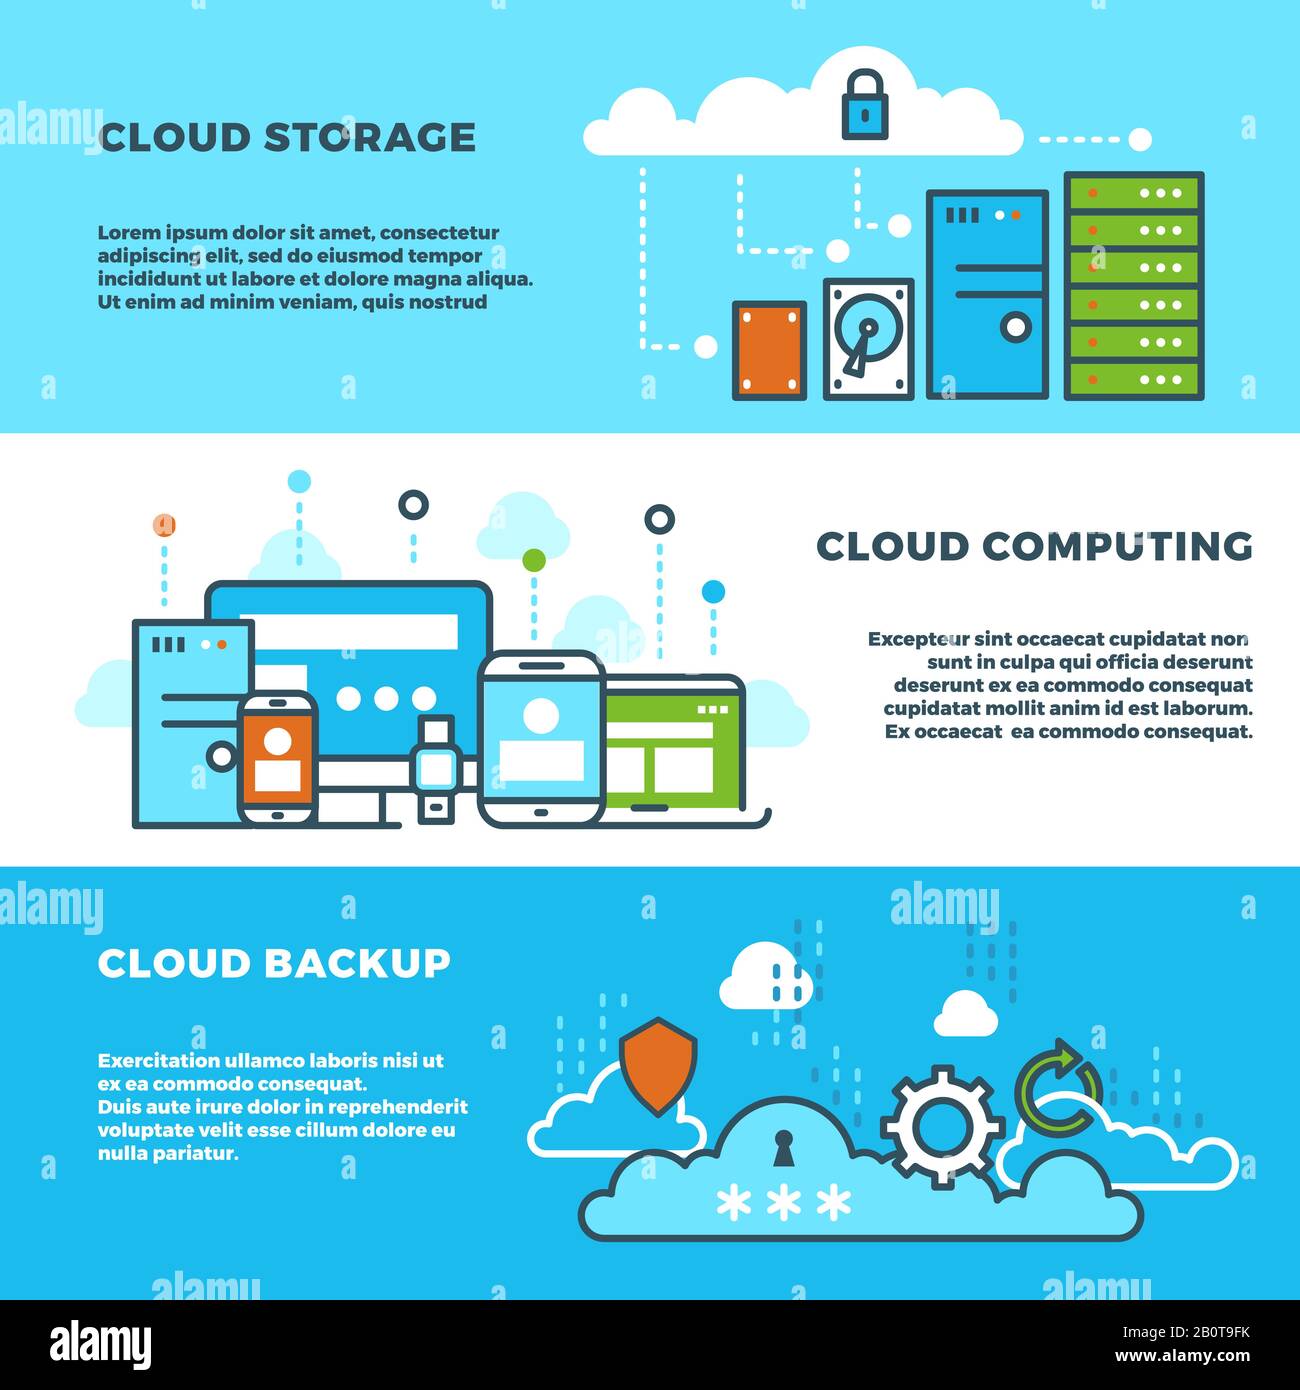 Cloud Computing-Lösung, Geschäftsservices für Datenspeicherung, Vektorbanner für Informationstechnologie. Cloud-Storage-Banner-Konzept, Abbildung von Cloud-Backup und -Computing Stock Vektor